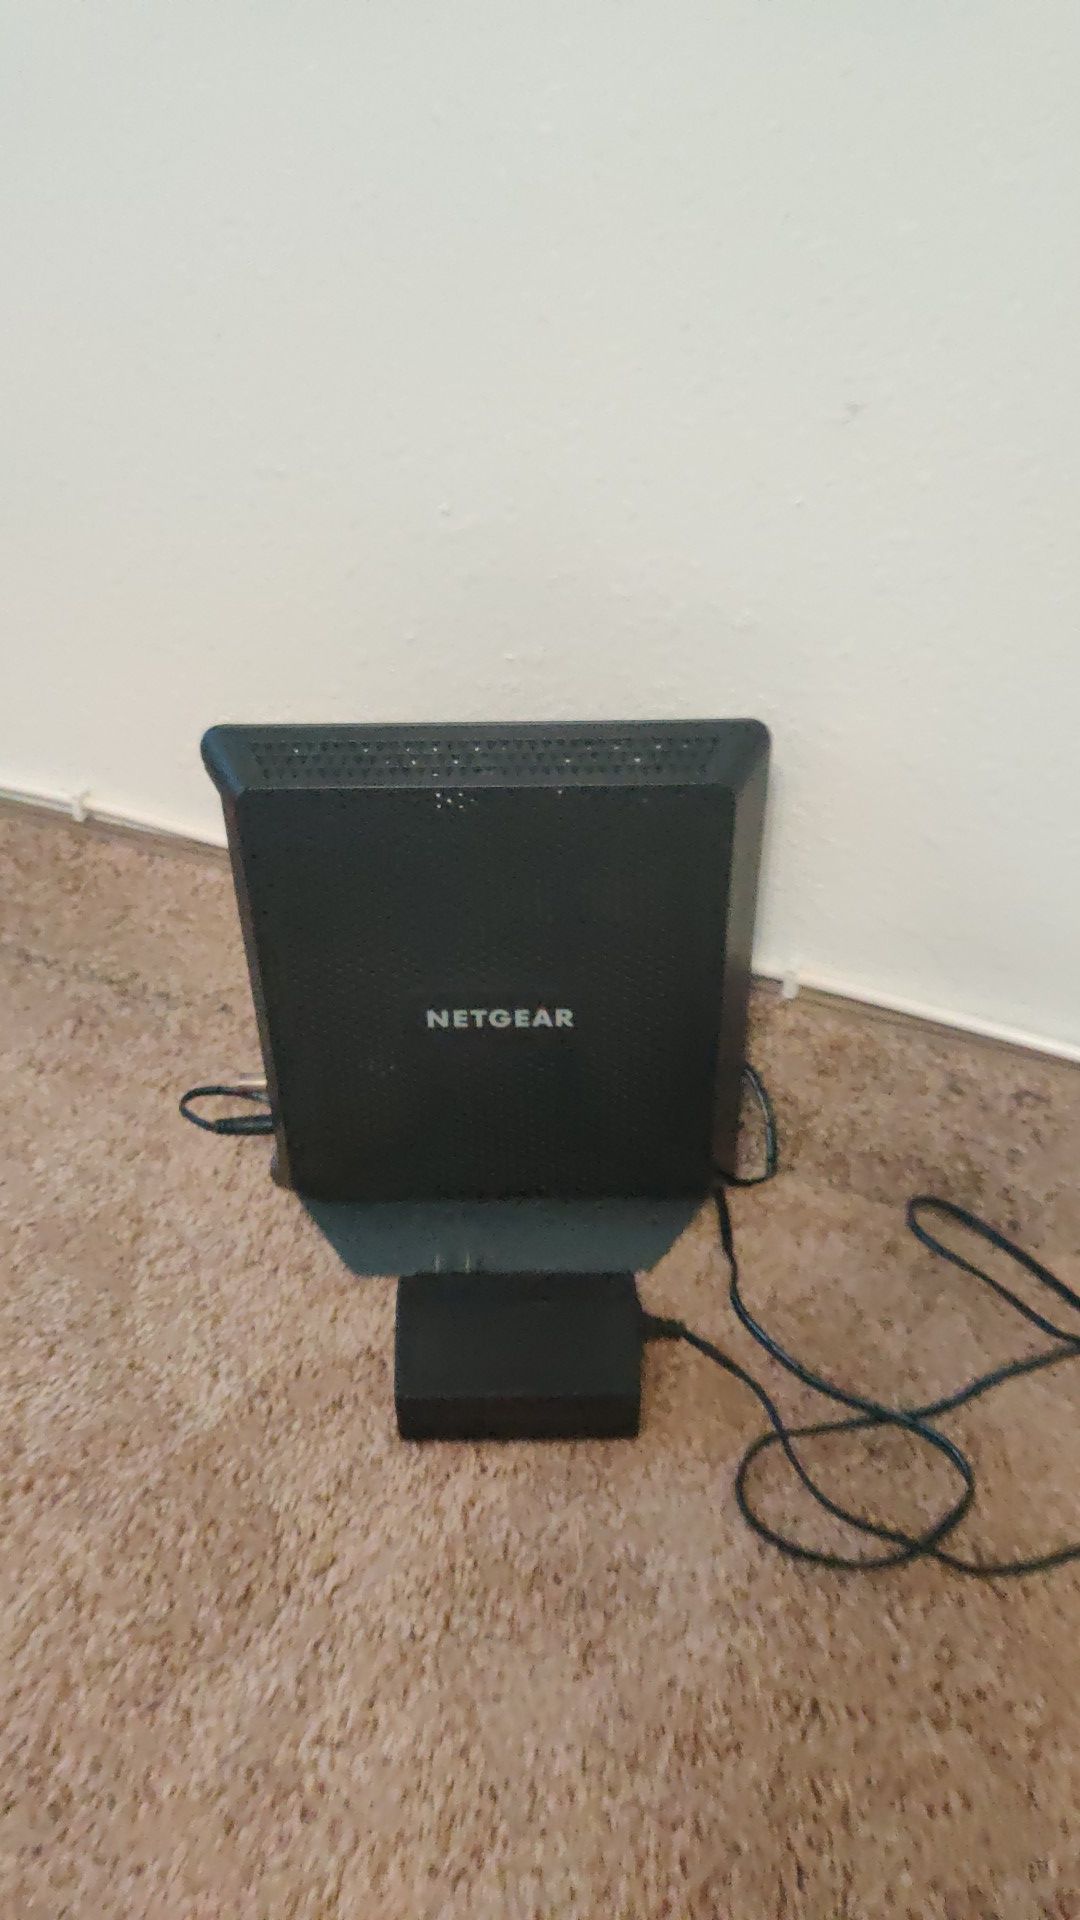 Netgear Nighthawk modem router combo